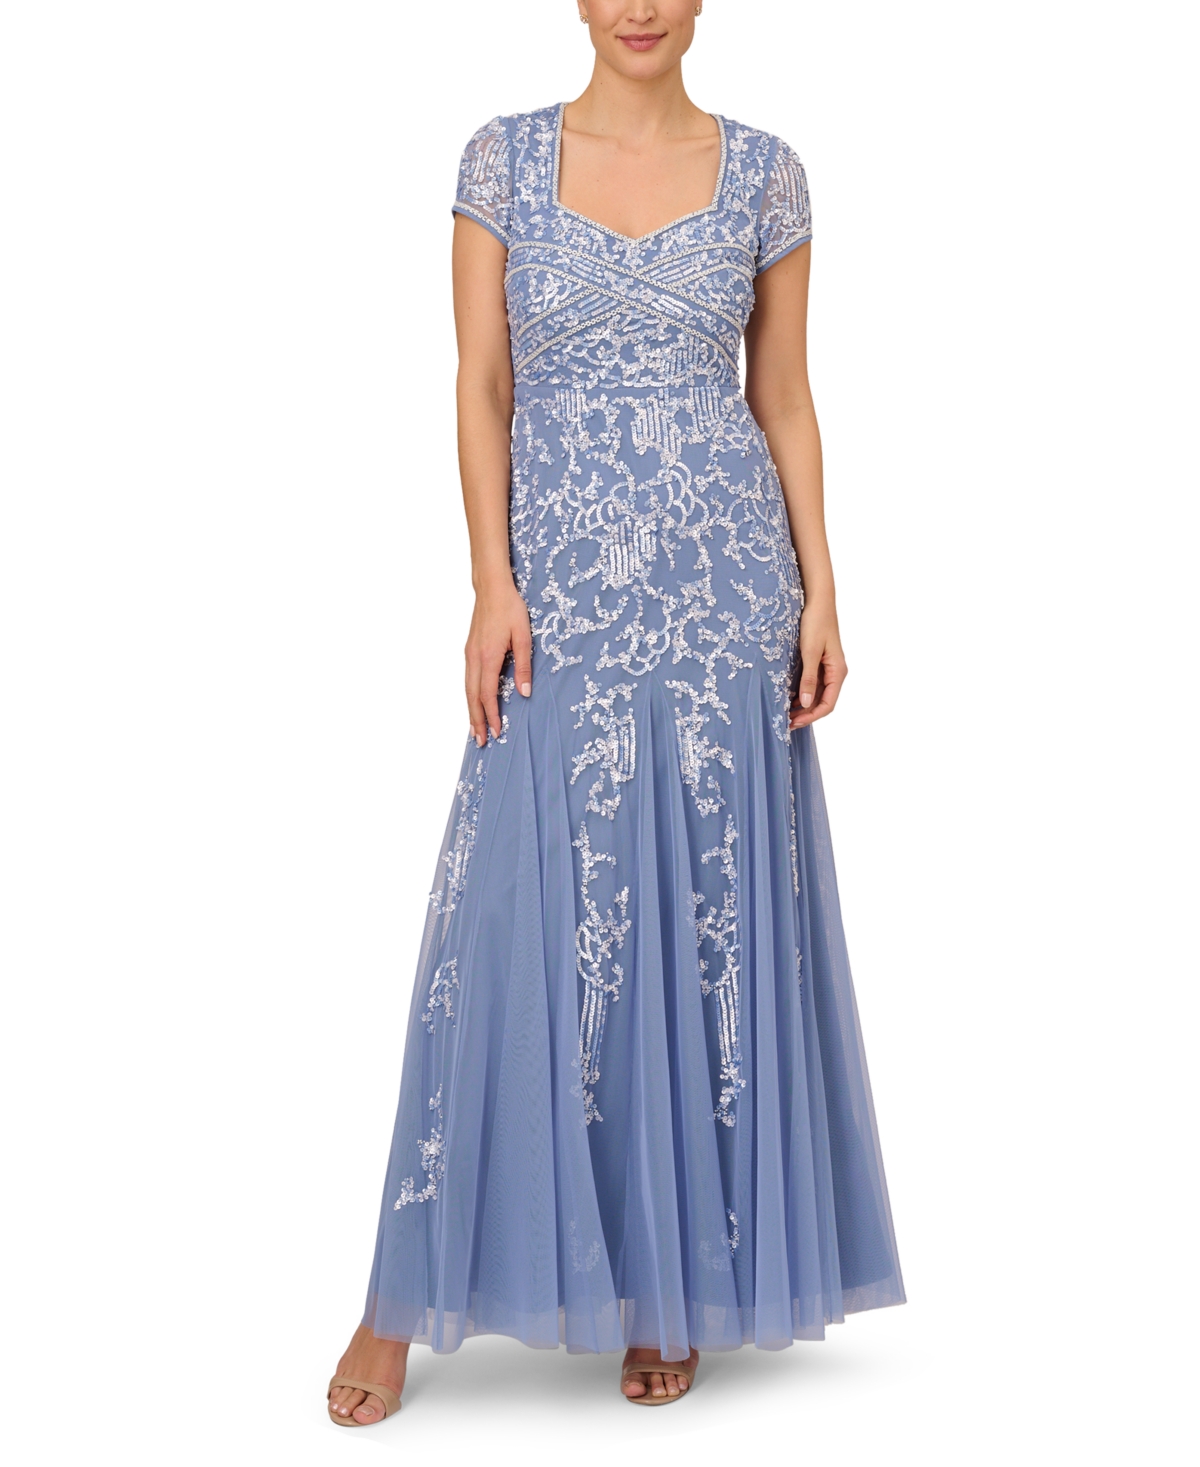 Vintage Evening Dresses, Vintage Formal Dresses Adrianna Papell Embellished Godet Gown - French Blue $349.00 AT vintagedancer.com